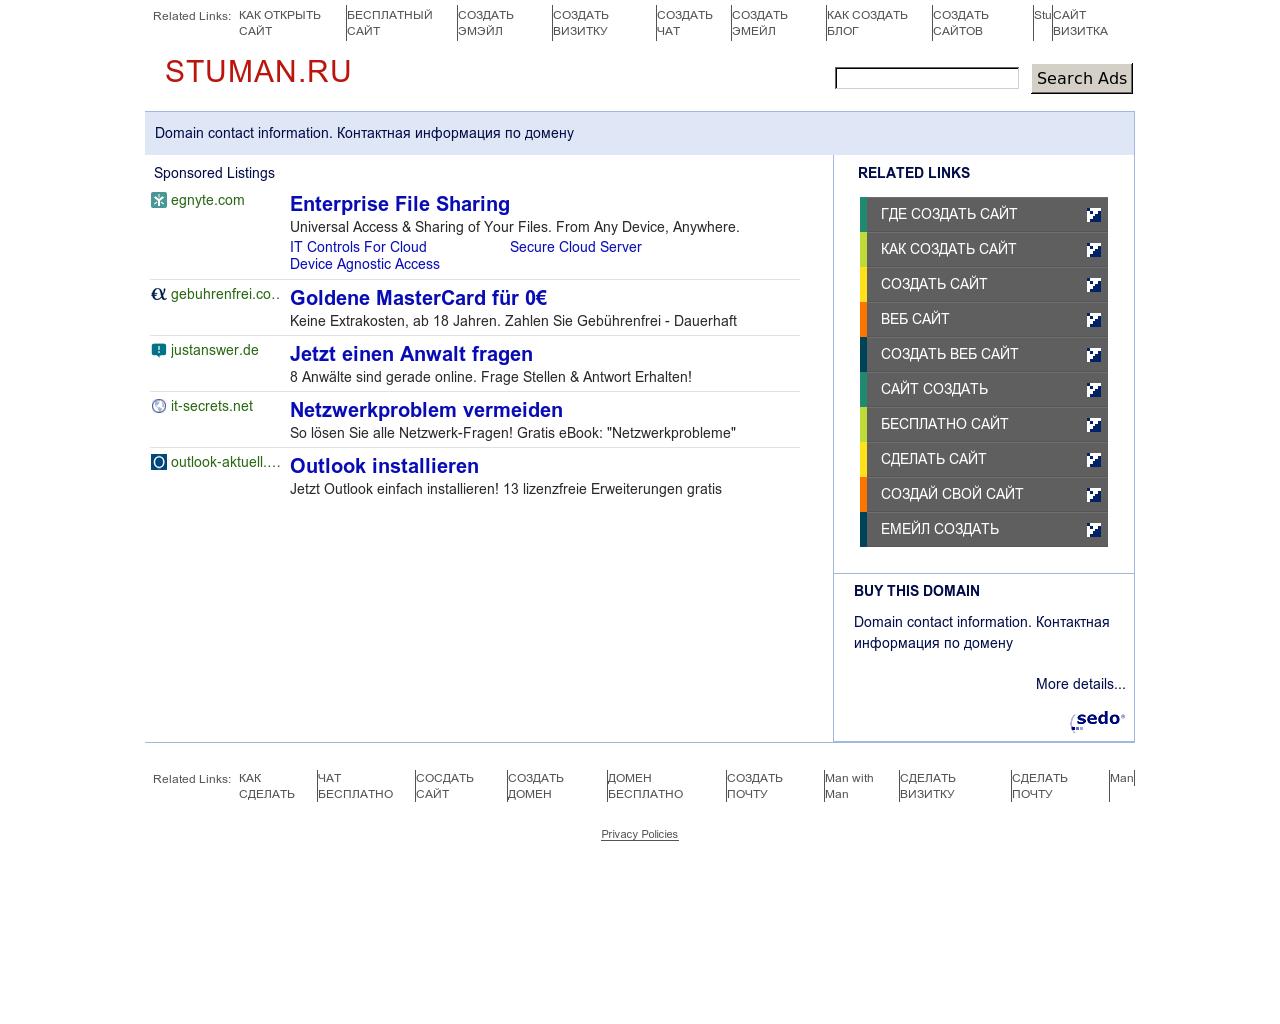 Изображение сайта stuman.ru в разрешении 1280x1024